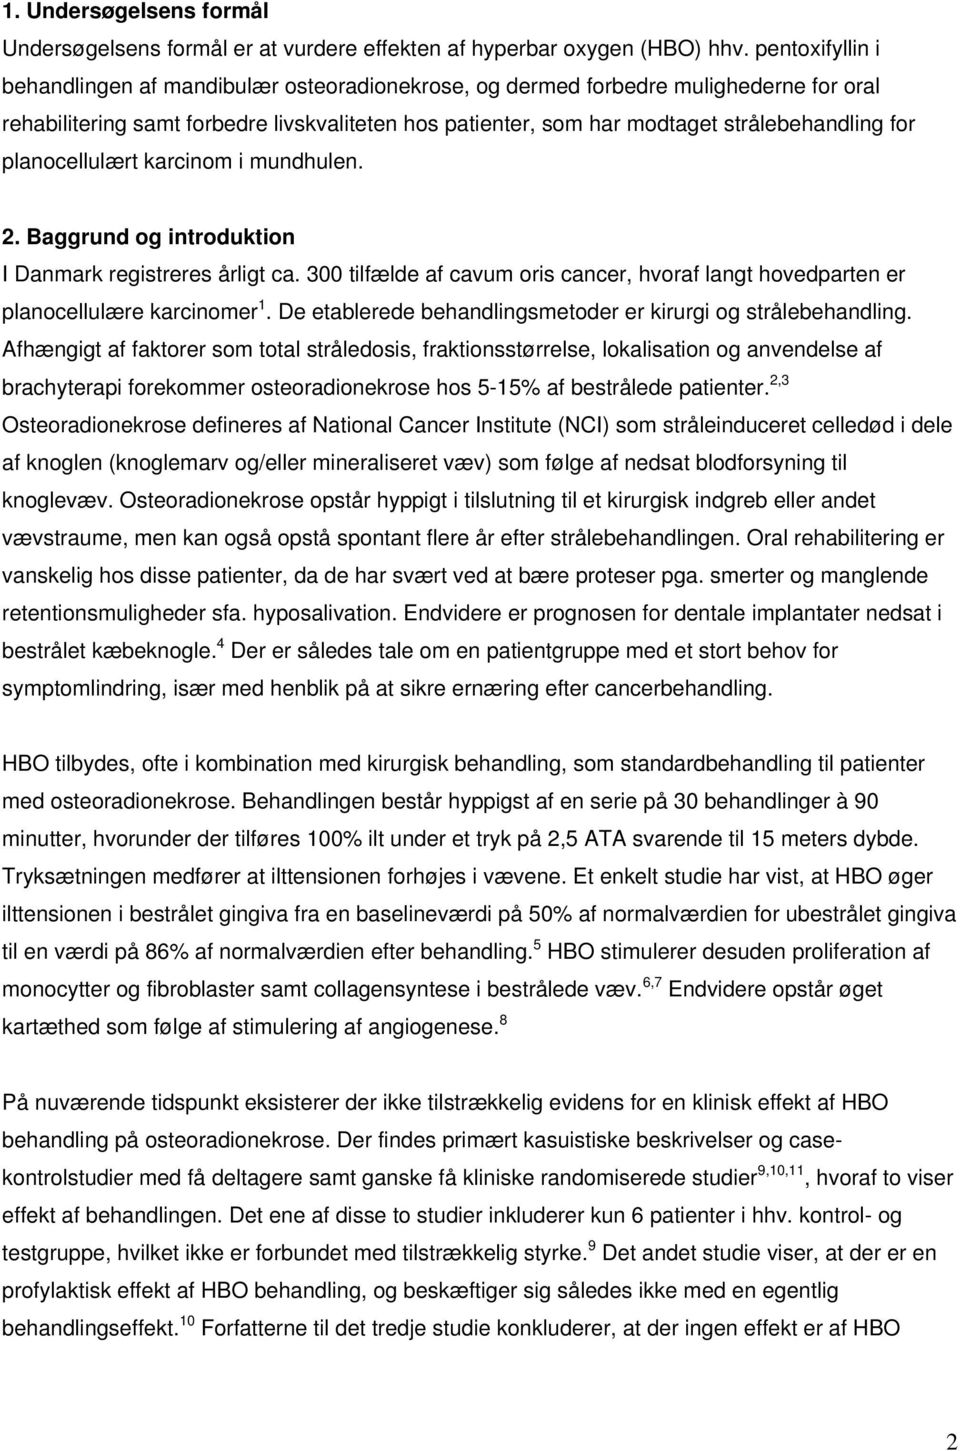 planocellulært karcinom i mundhulen. 2. Baggrund og introduktion I Danmark registreres årligt ca. 300 tilfælde af cavum oris cancer, hvoraf langt hovedparten er planocellulære karcinomer 1.